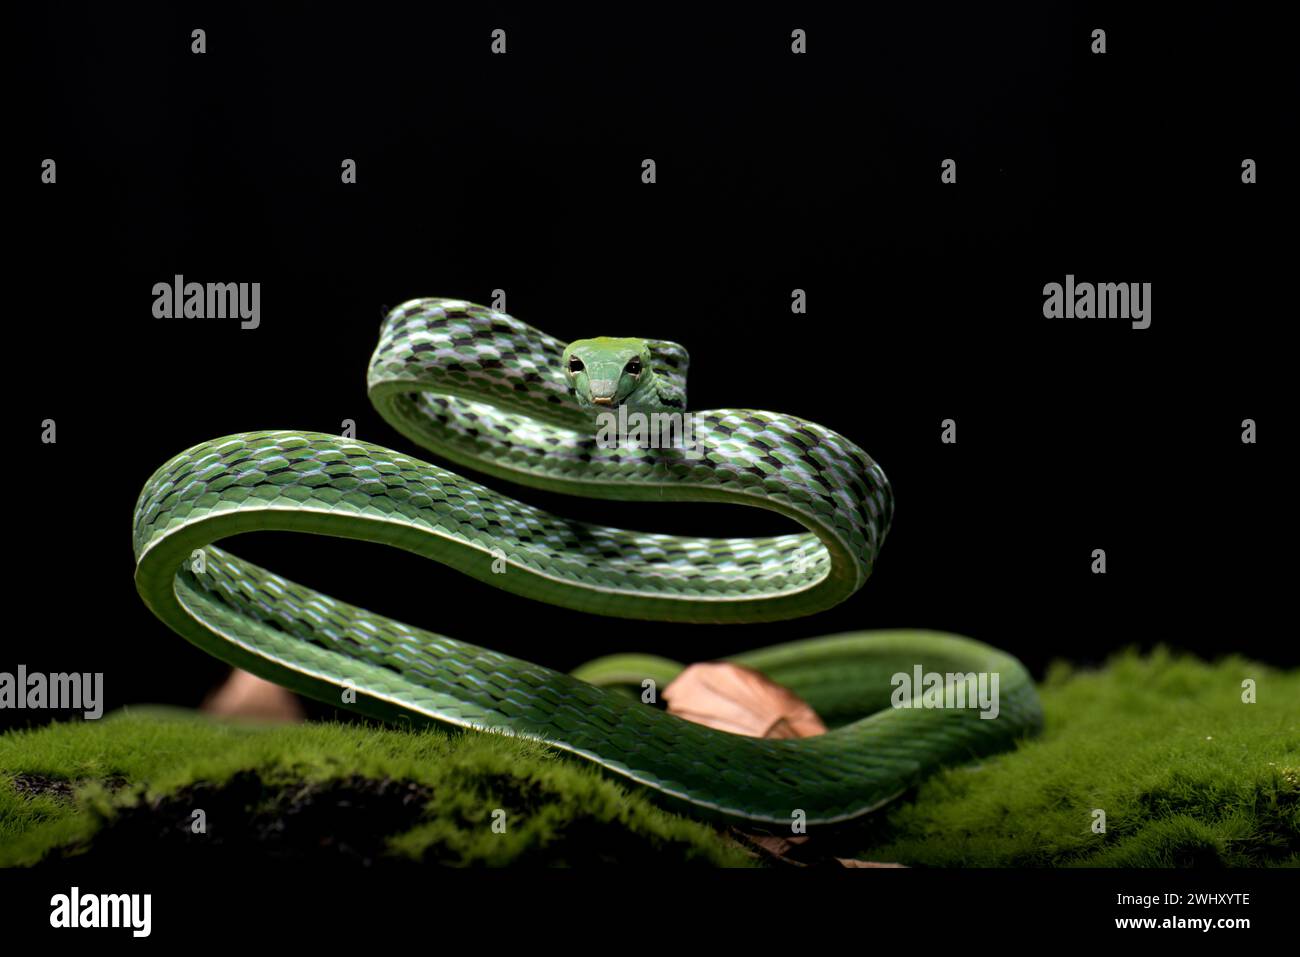 Gros plan photo de serpent de vigne asiatique sur fond noir Banque D'Images